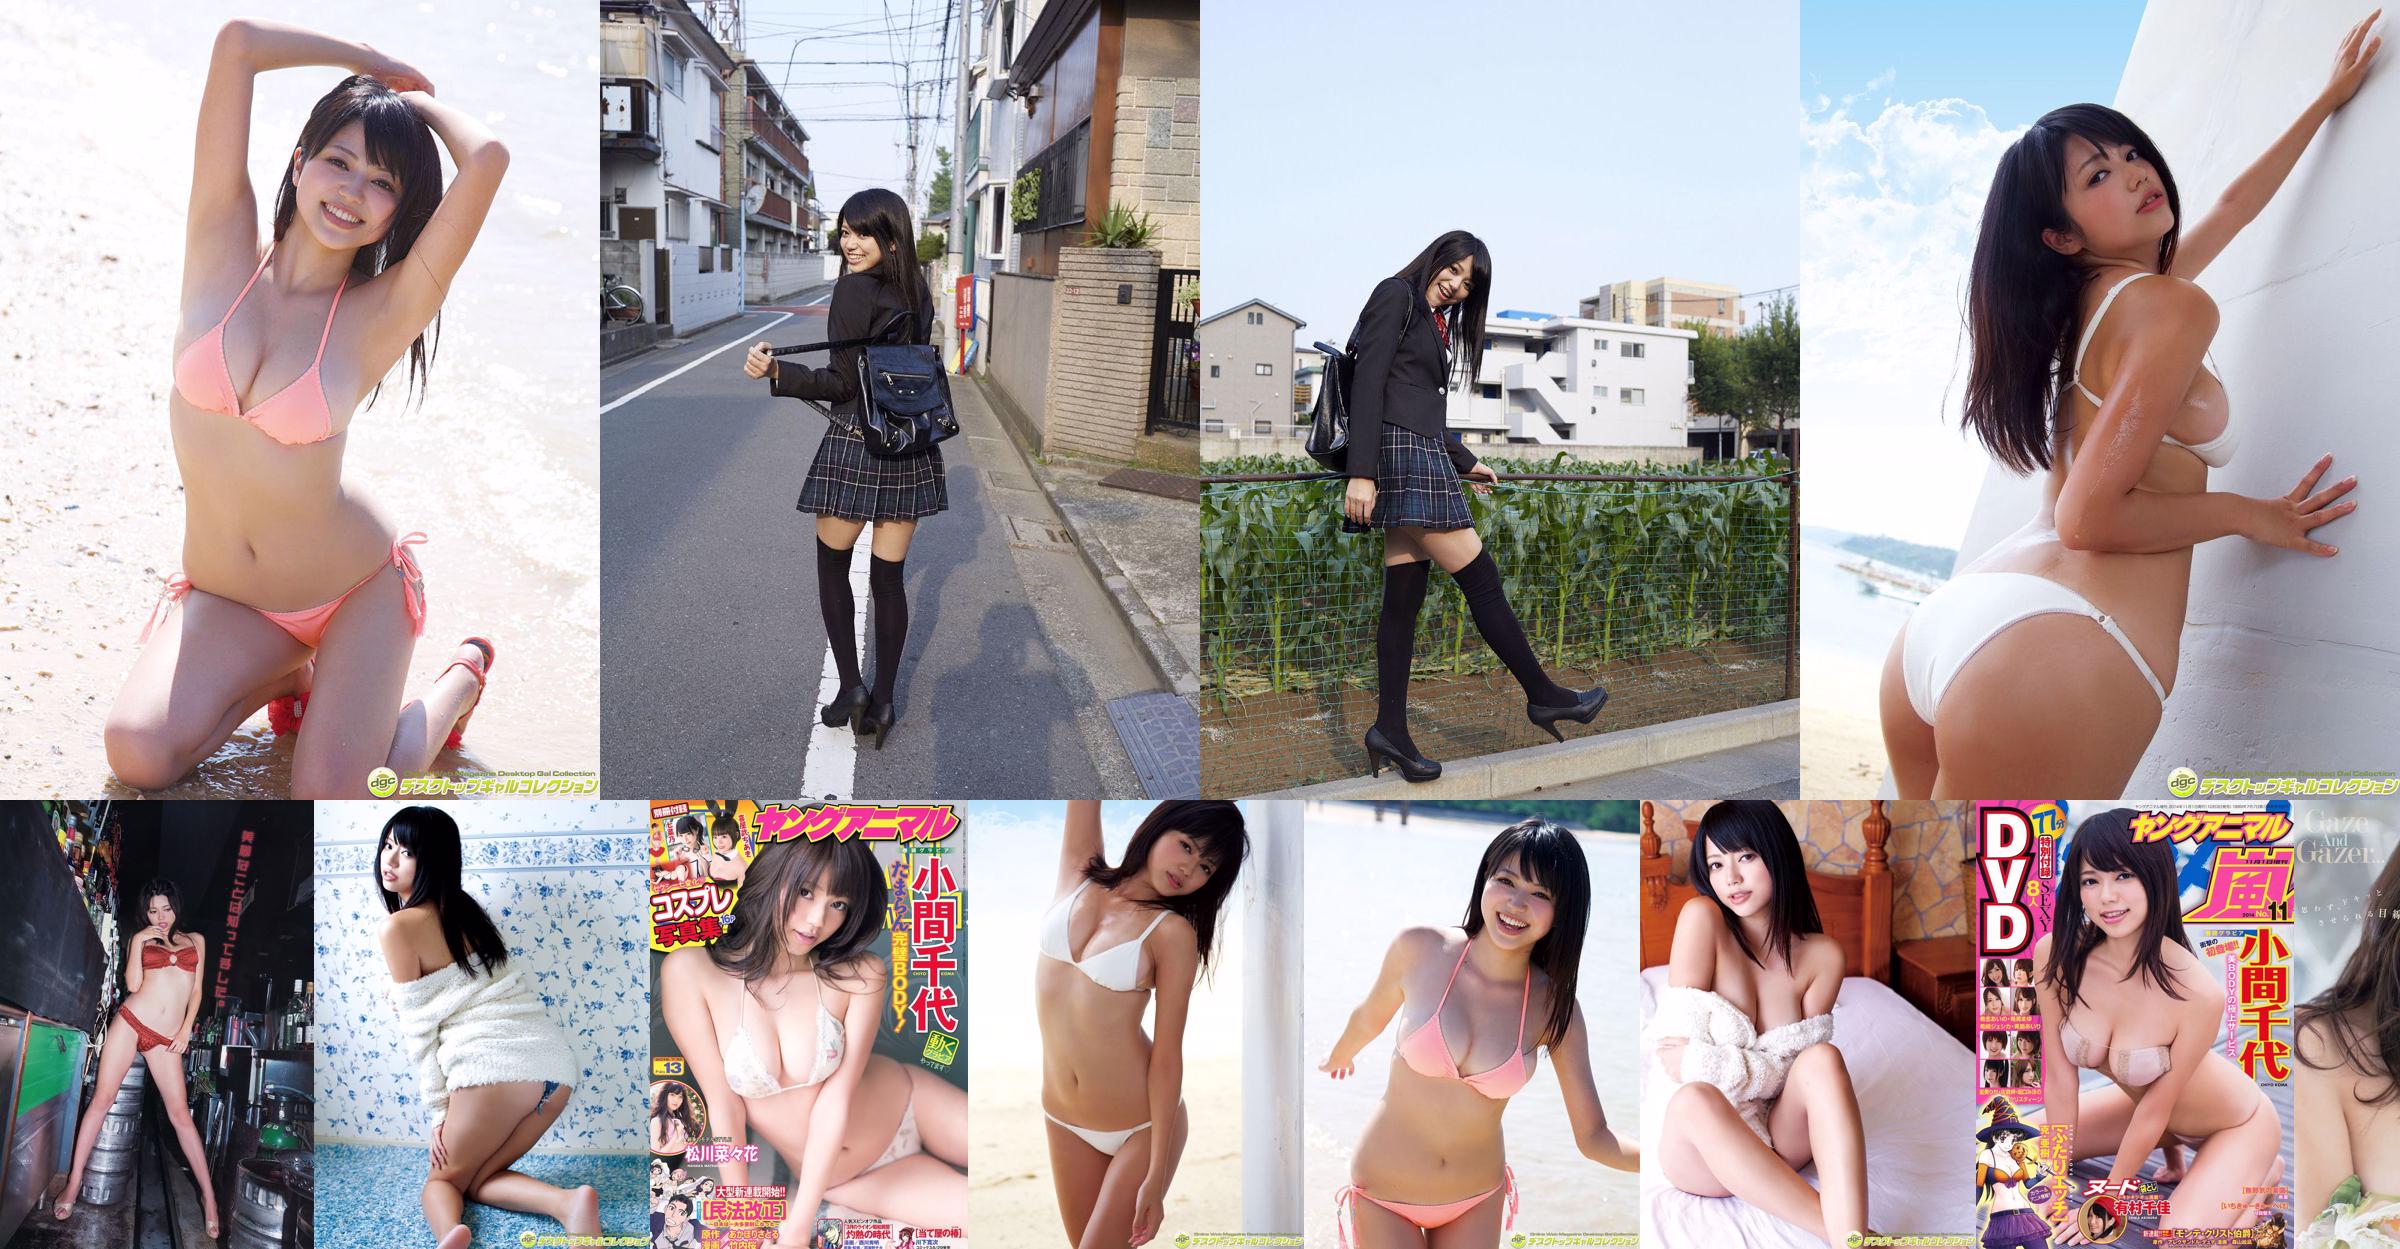 Chiyo Koma [Edição Especial Young Animal Arashi] No.11 2014 Photo Magazine No.bab7bc Página 1